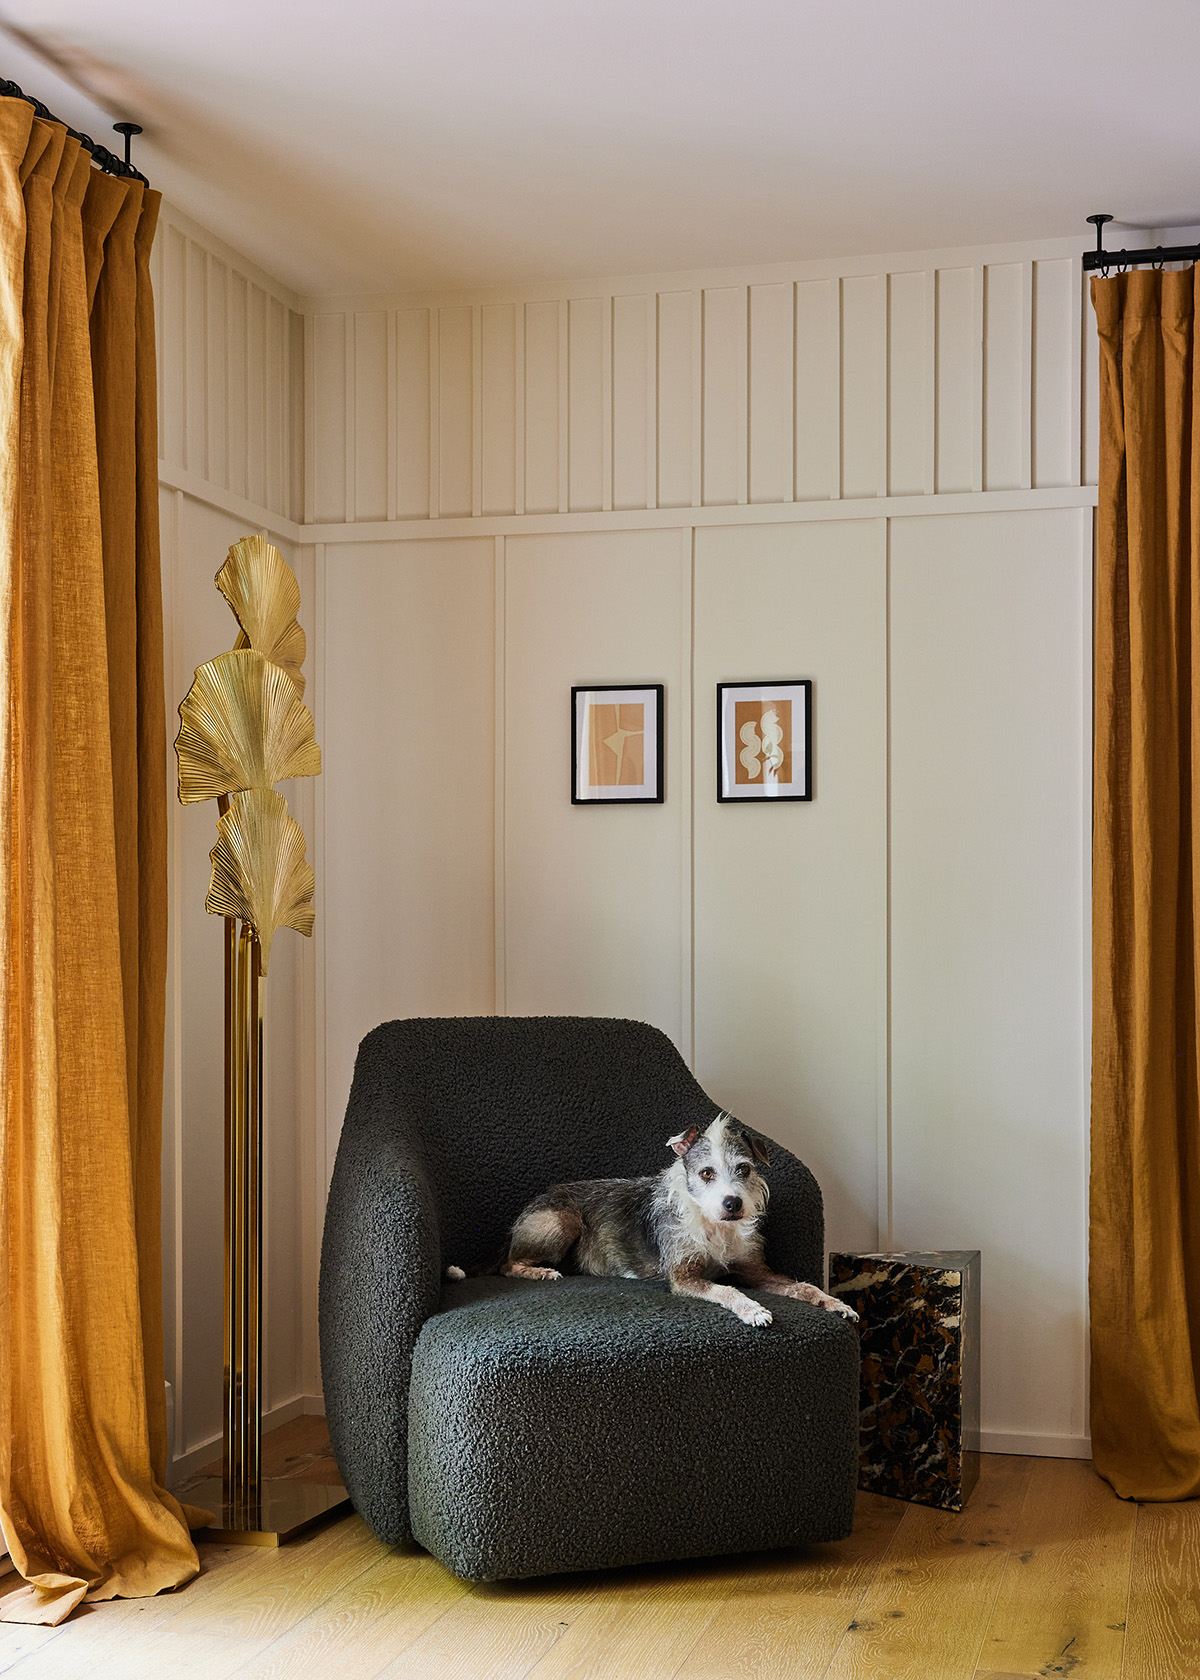 سگ ها در فضاهای داخلی - سارا شرمن ساموئل